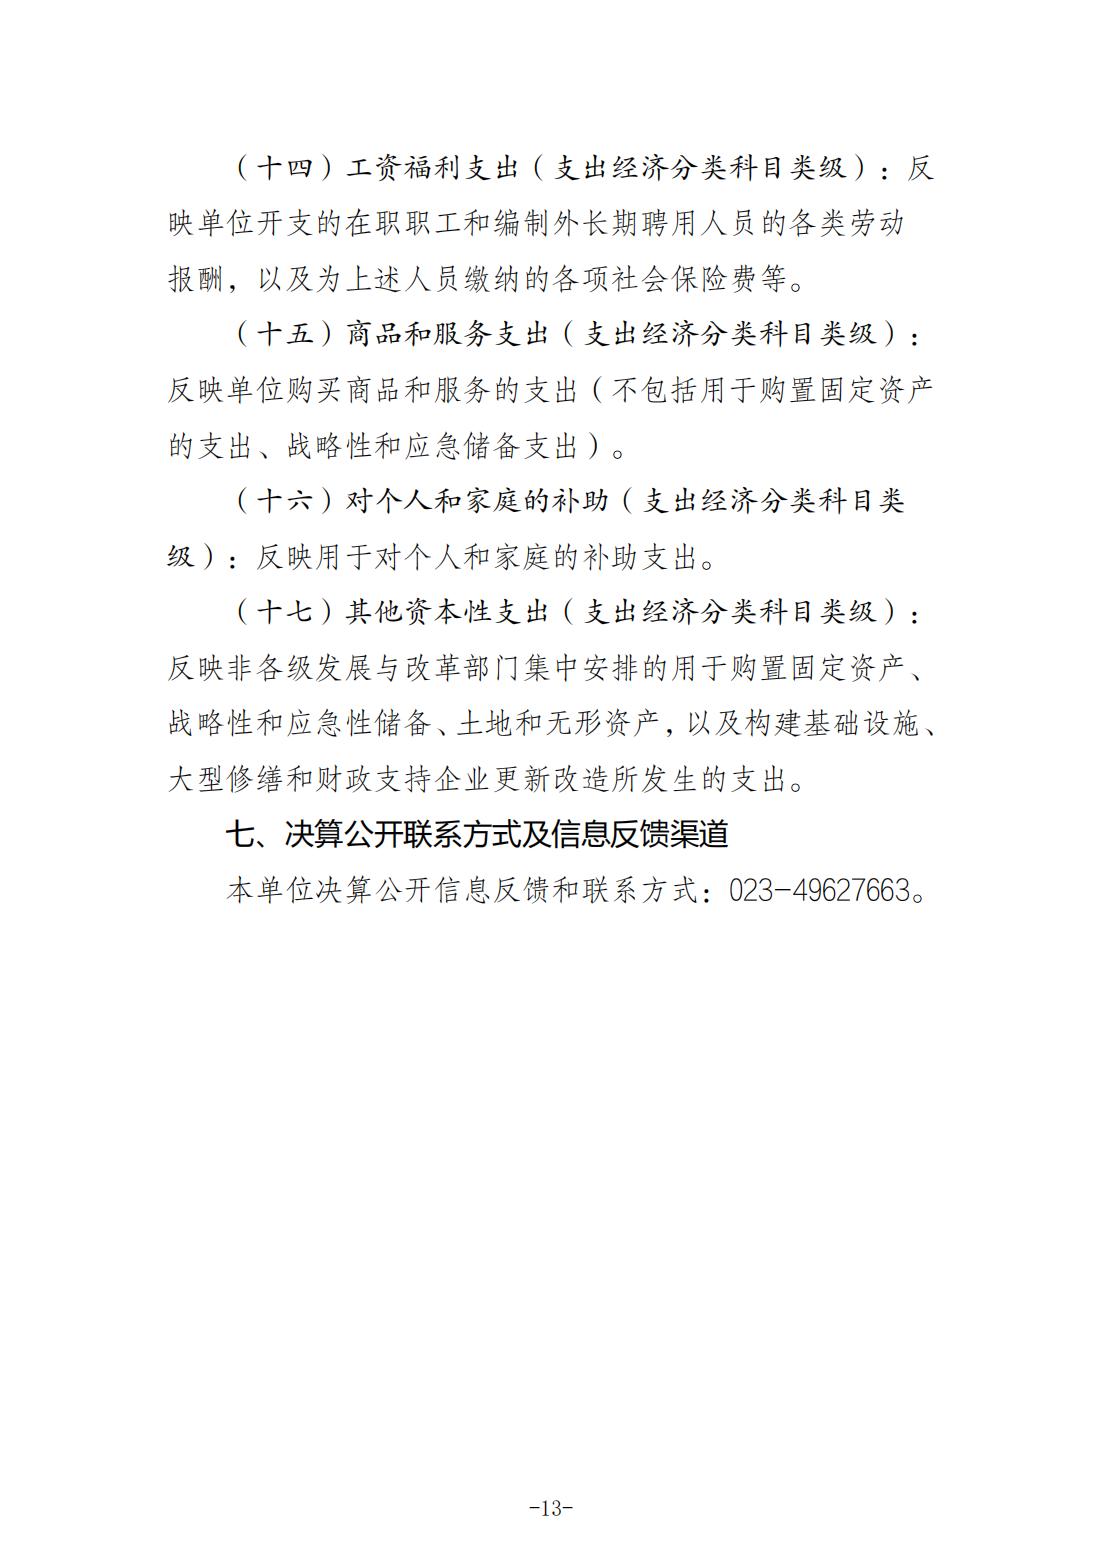 重庆城市职业学院2021年度部门决算情况说明_12.jpg